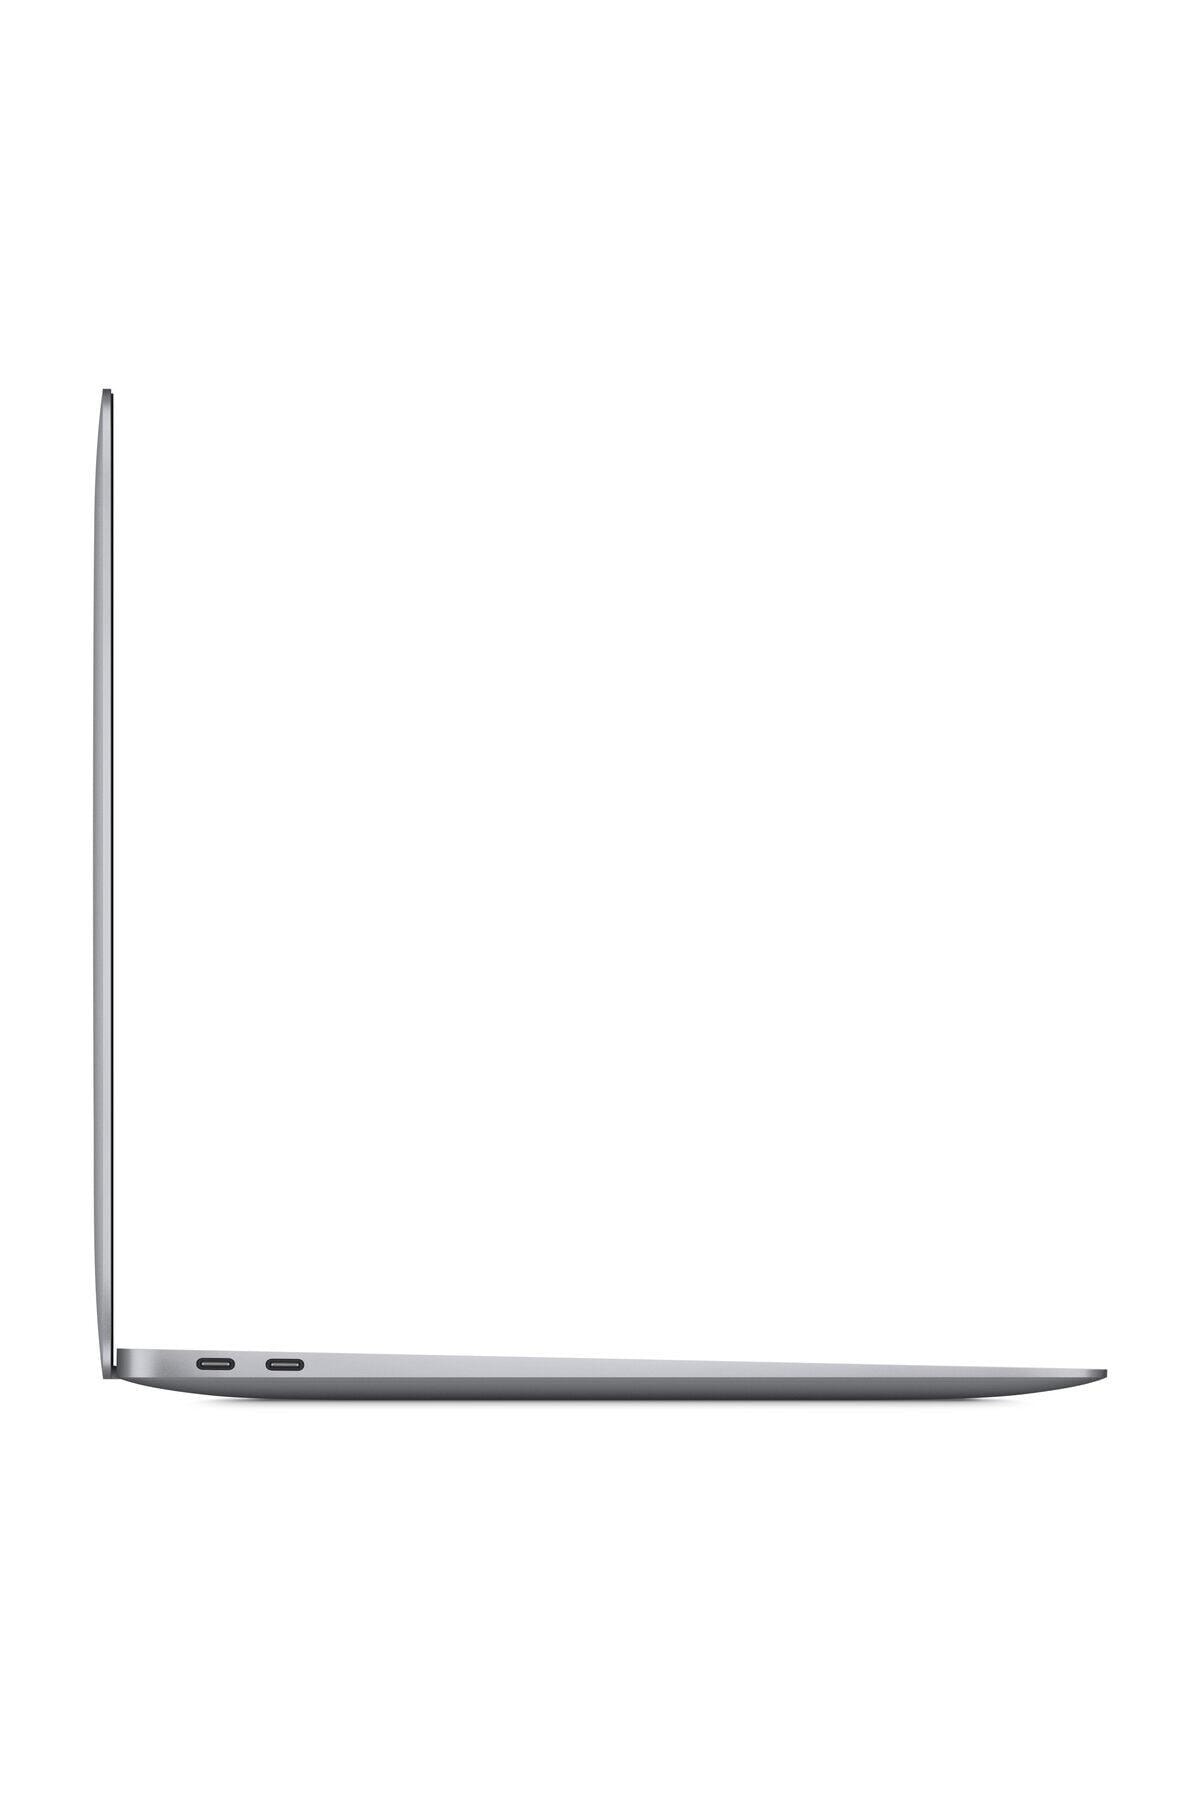 Apple Macbook Air M1 Çip 16gb 512gb Macos 13.3 Inç Qhd Taşınabilir Bilgisayar Uzay Grisi NE11184